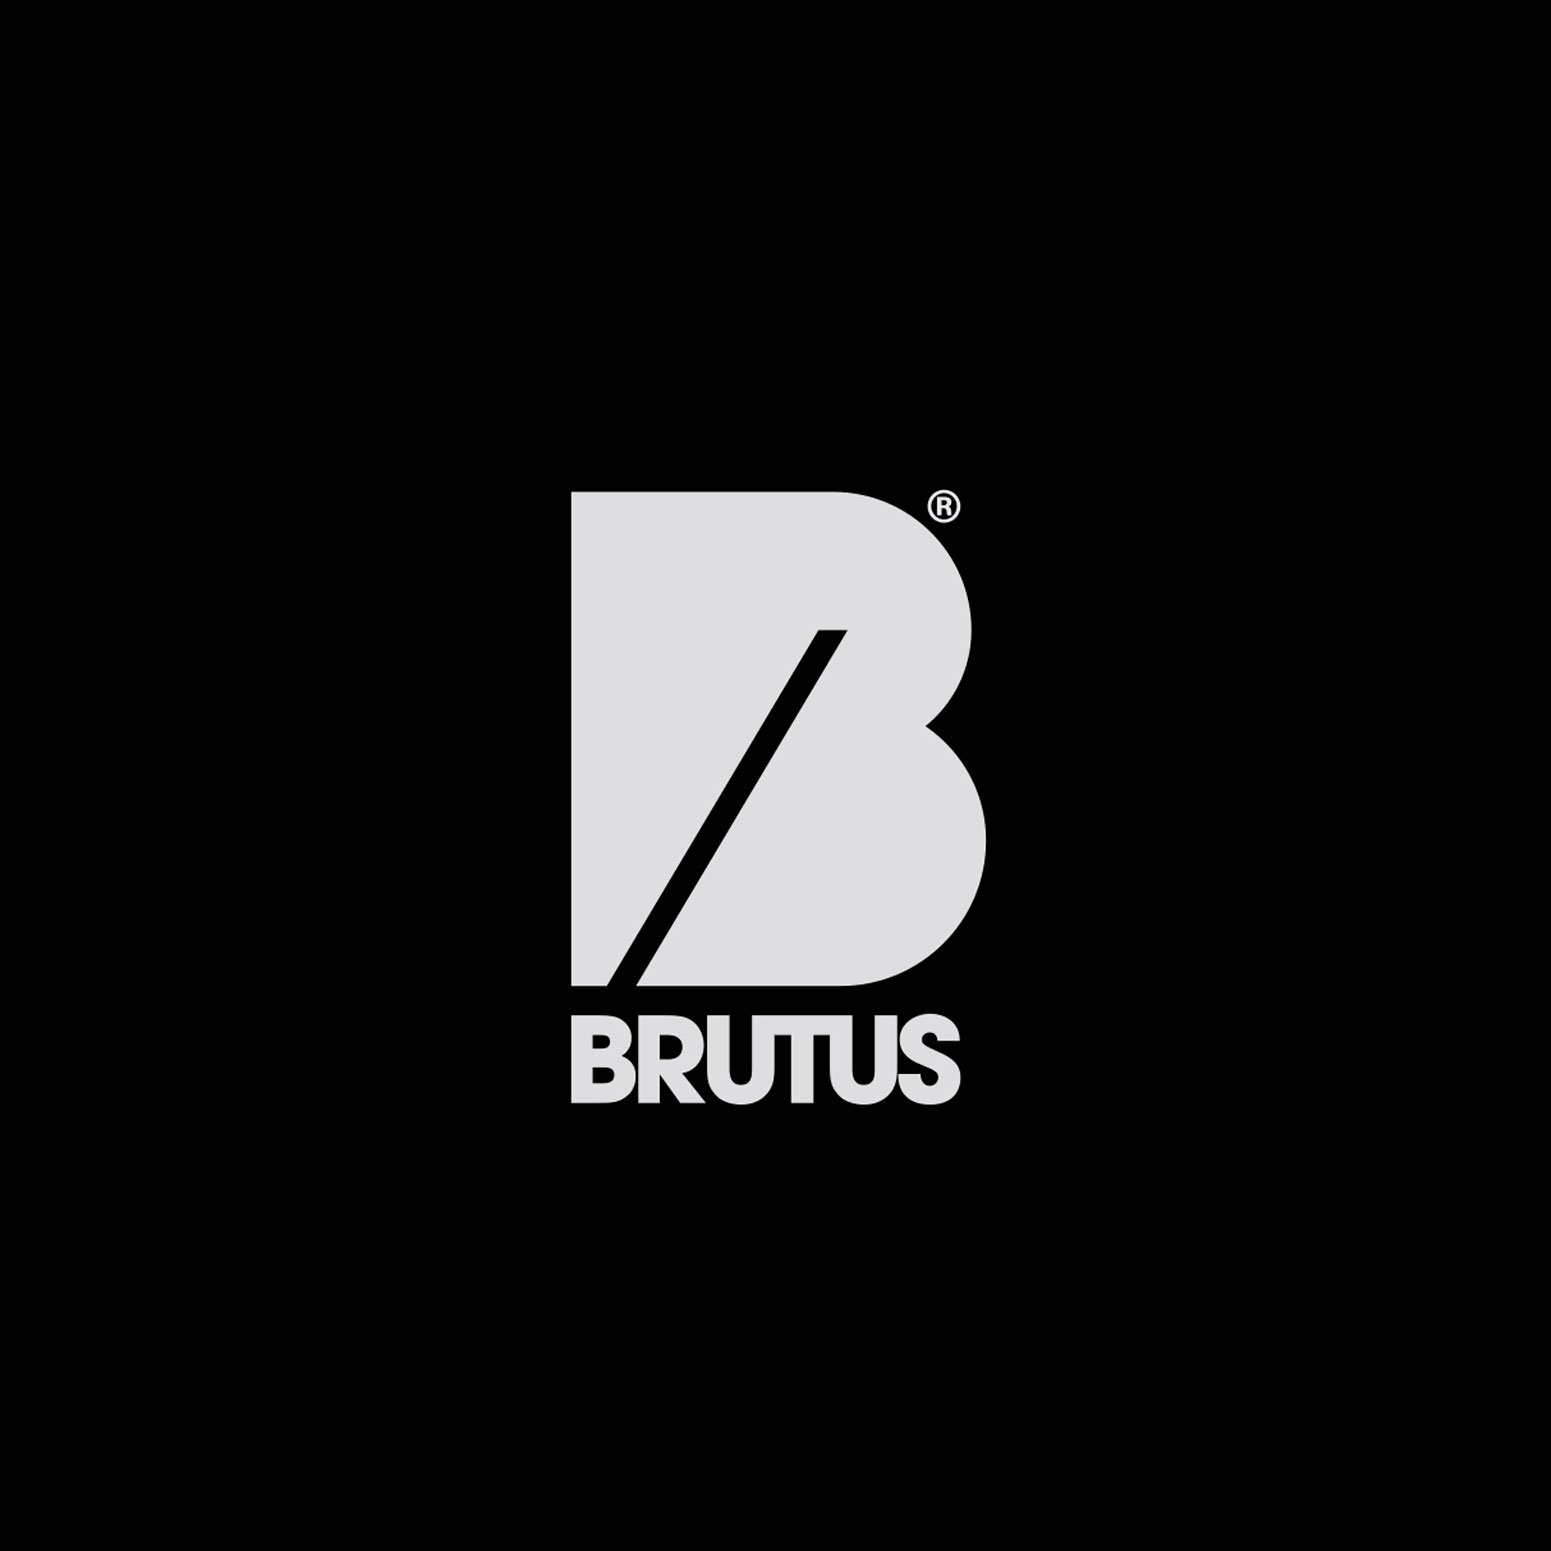 logo-brutus-inverted.jpg